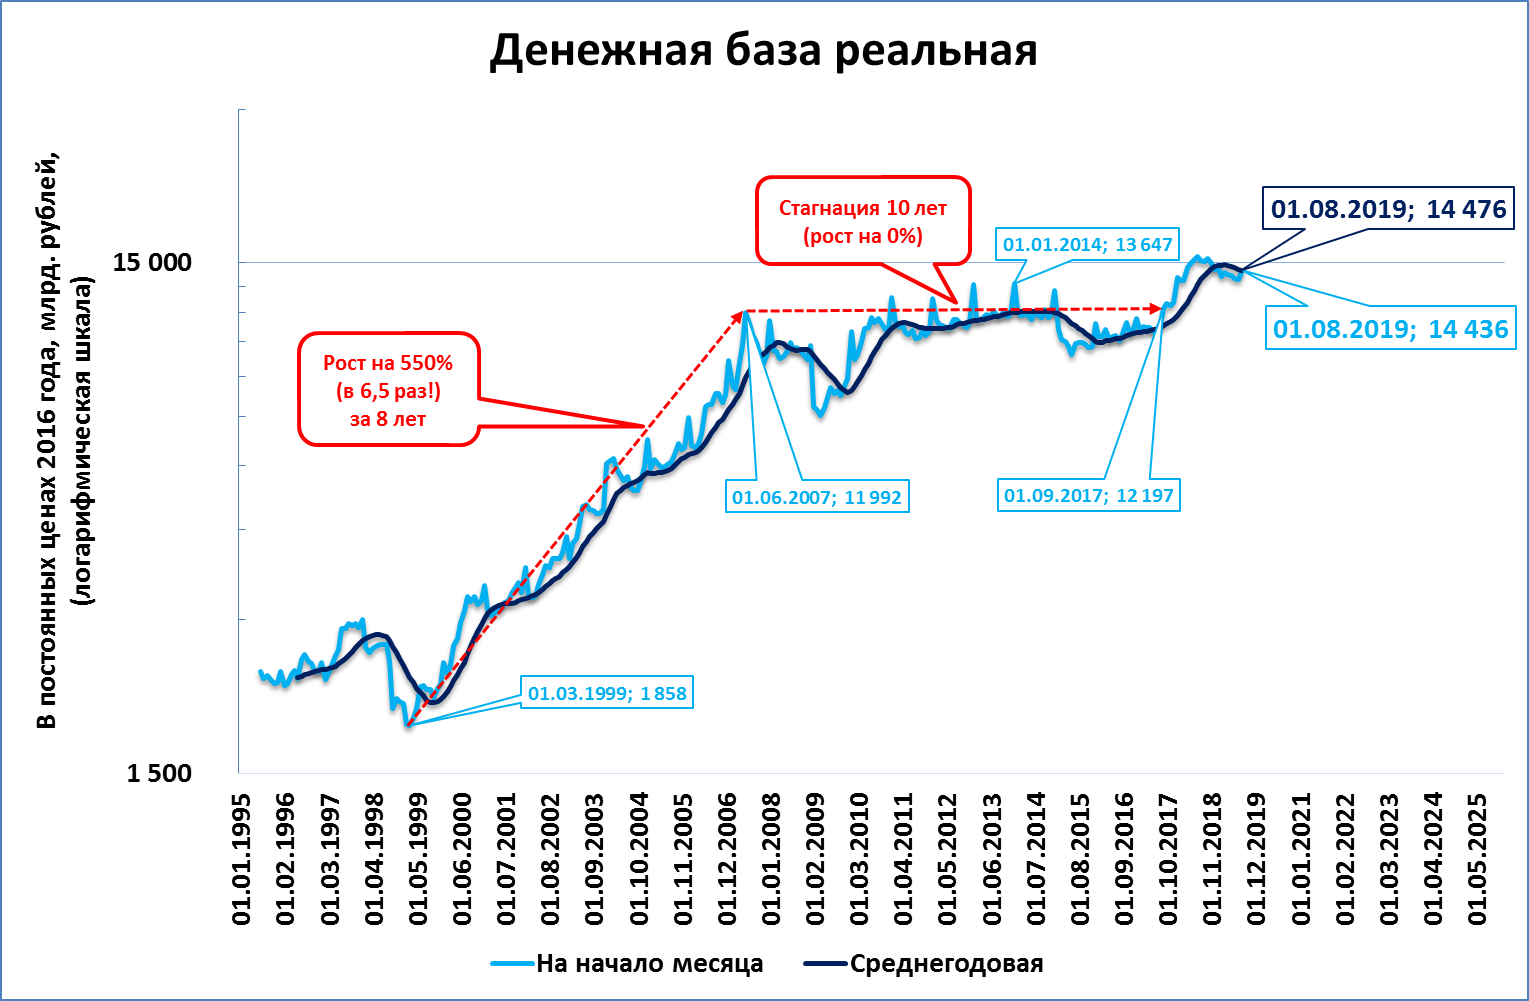 Стагнация 4. Стагнация Российской экономики. Стагнация в России. Стагнация на графике. Особенности стагнации Российской экономики.